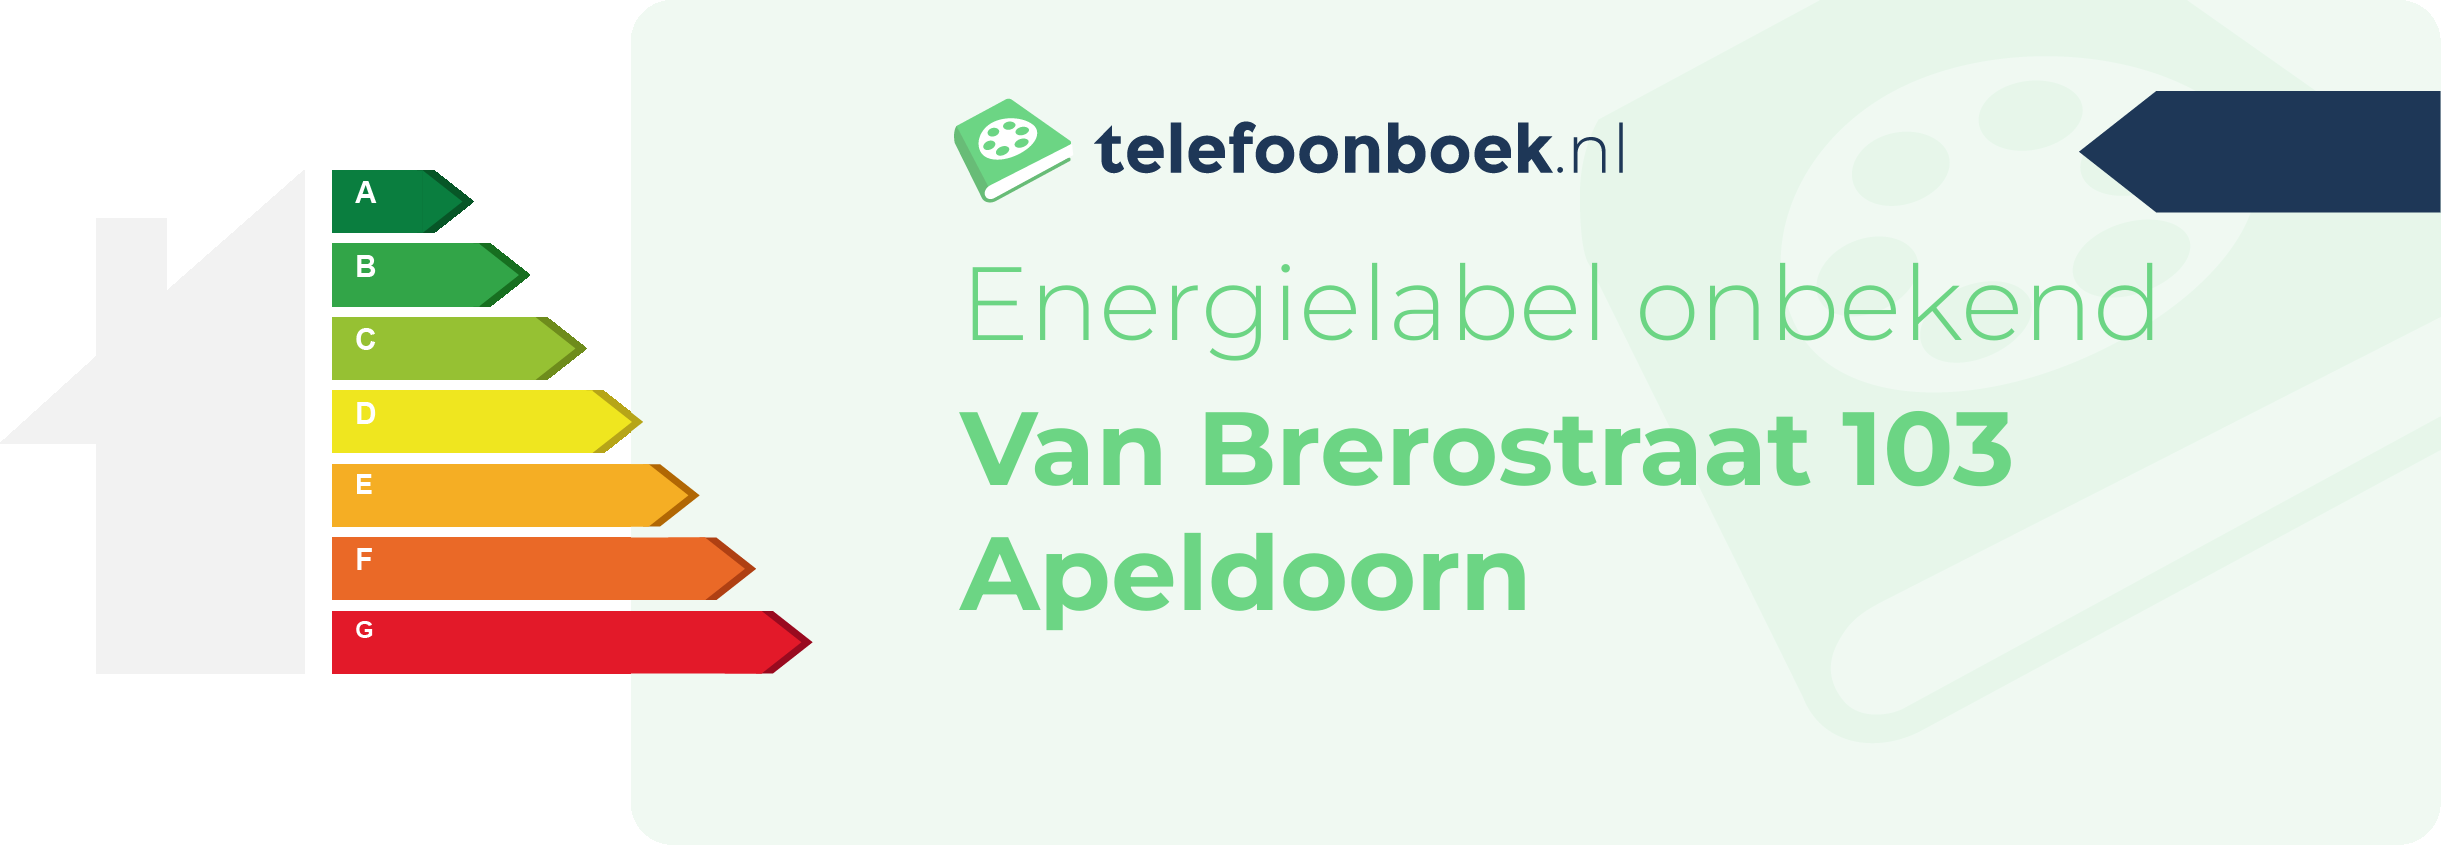 Energielabel Van Brerostraat 103 Apeldoorn